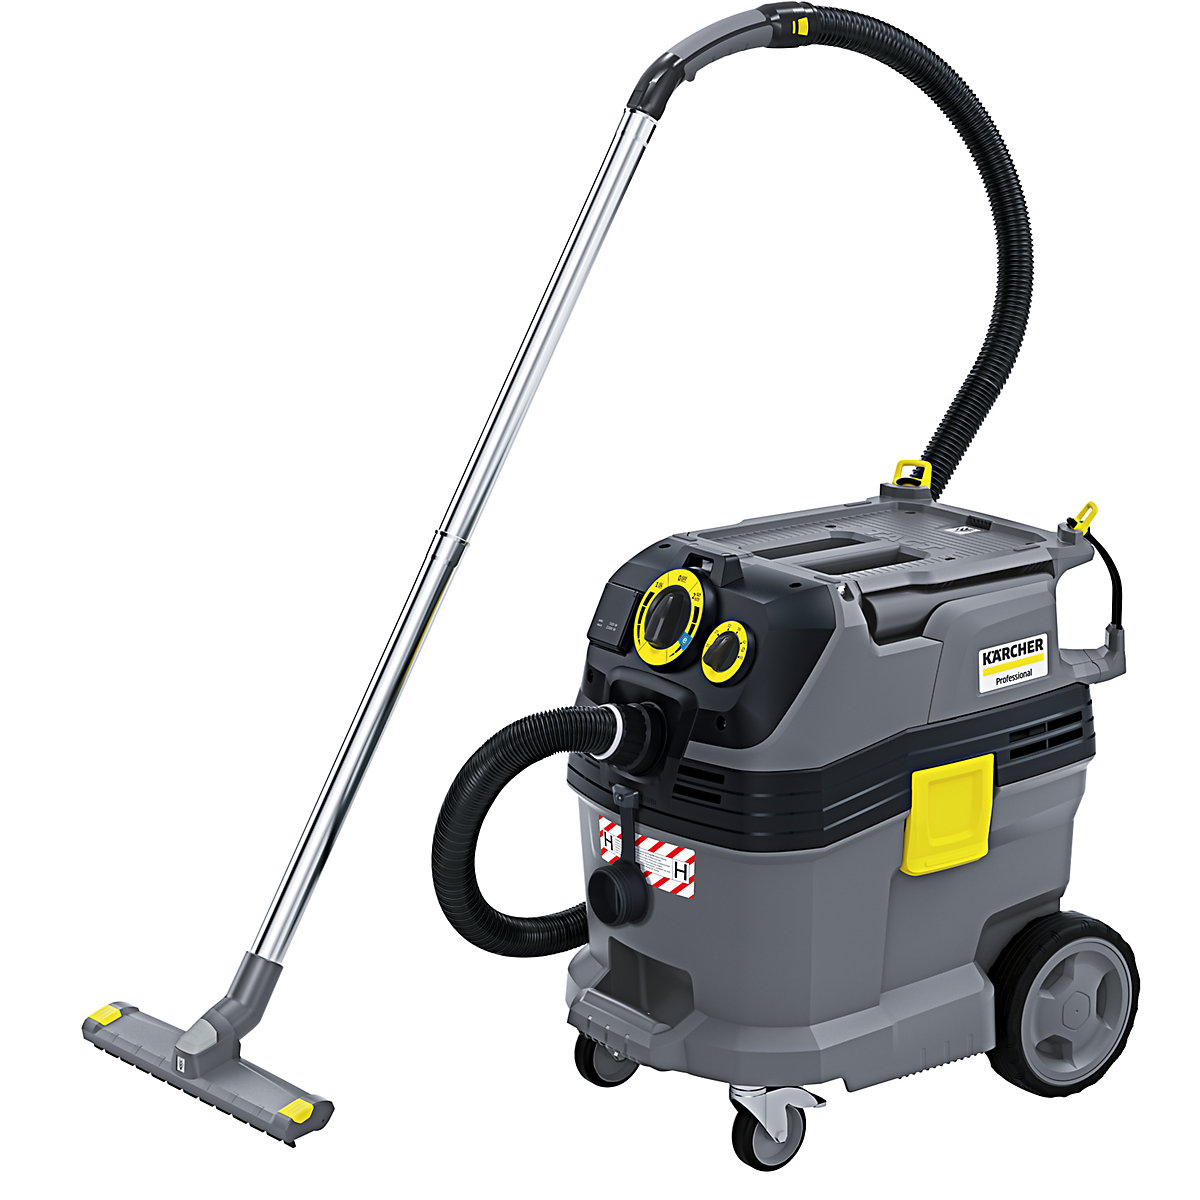 Safety vacuum cleaner – Kärcher